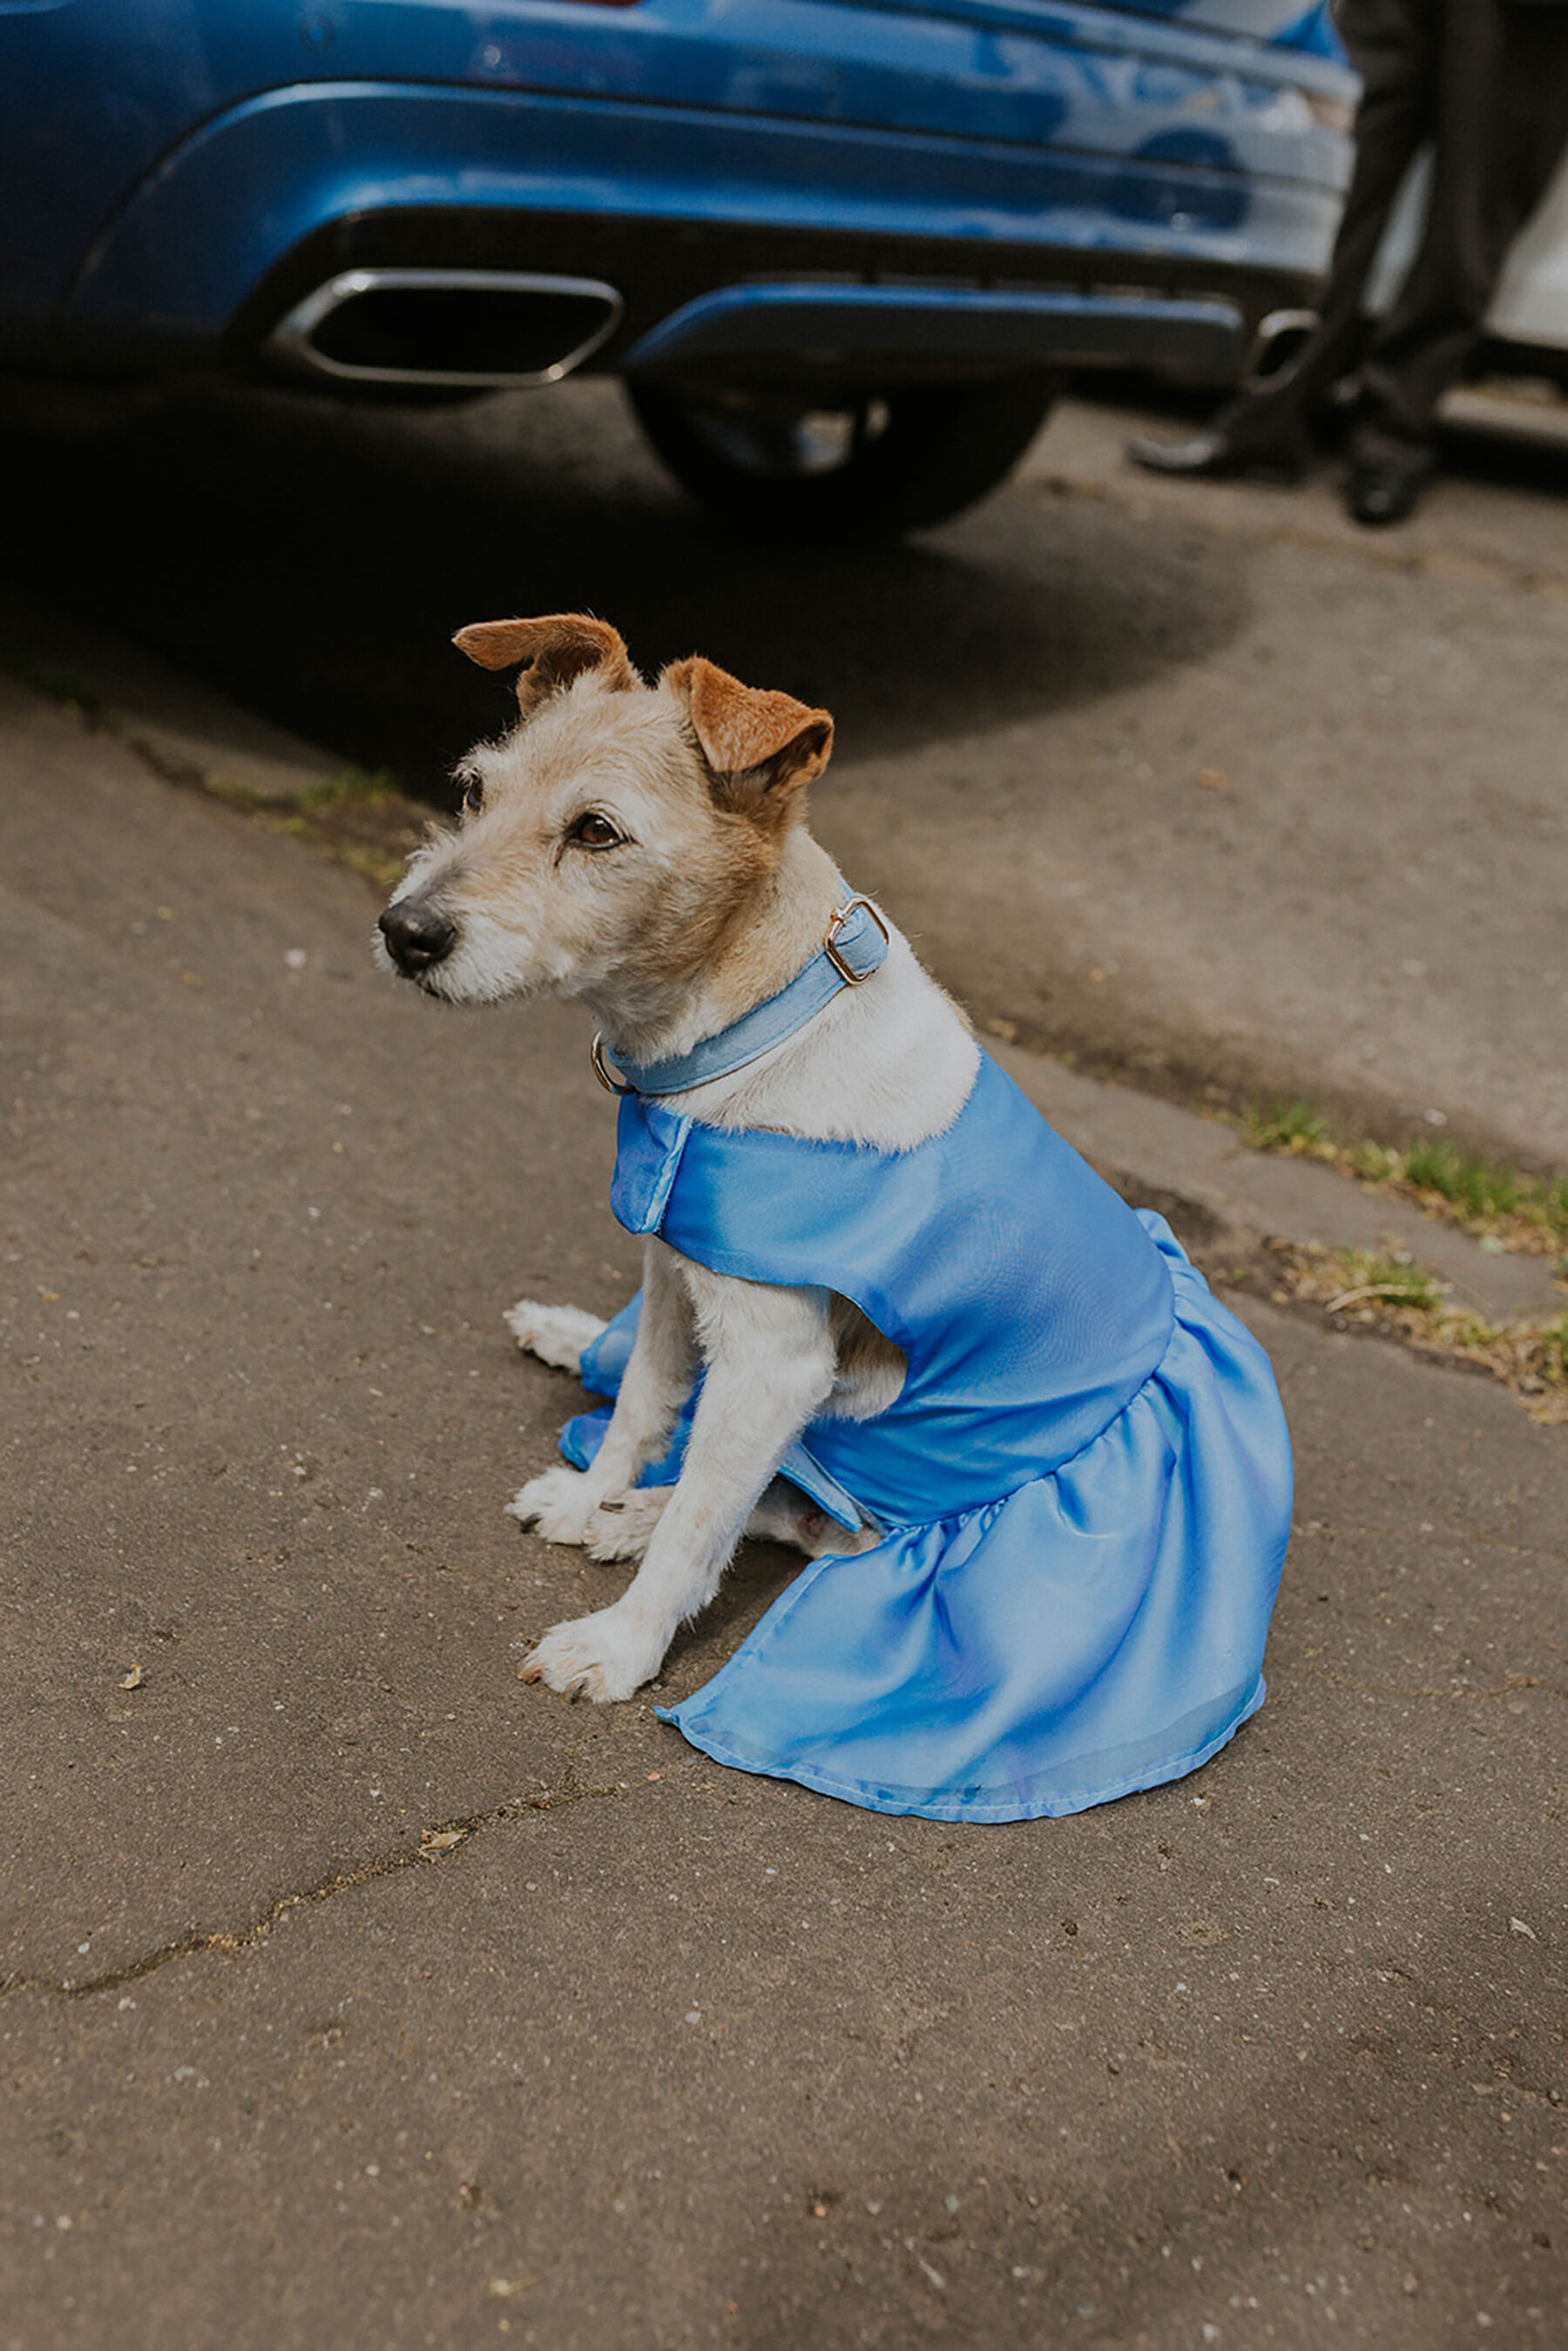 Cute dog in blue dress at a wedding.